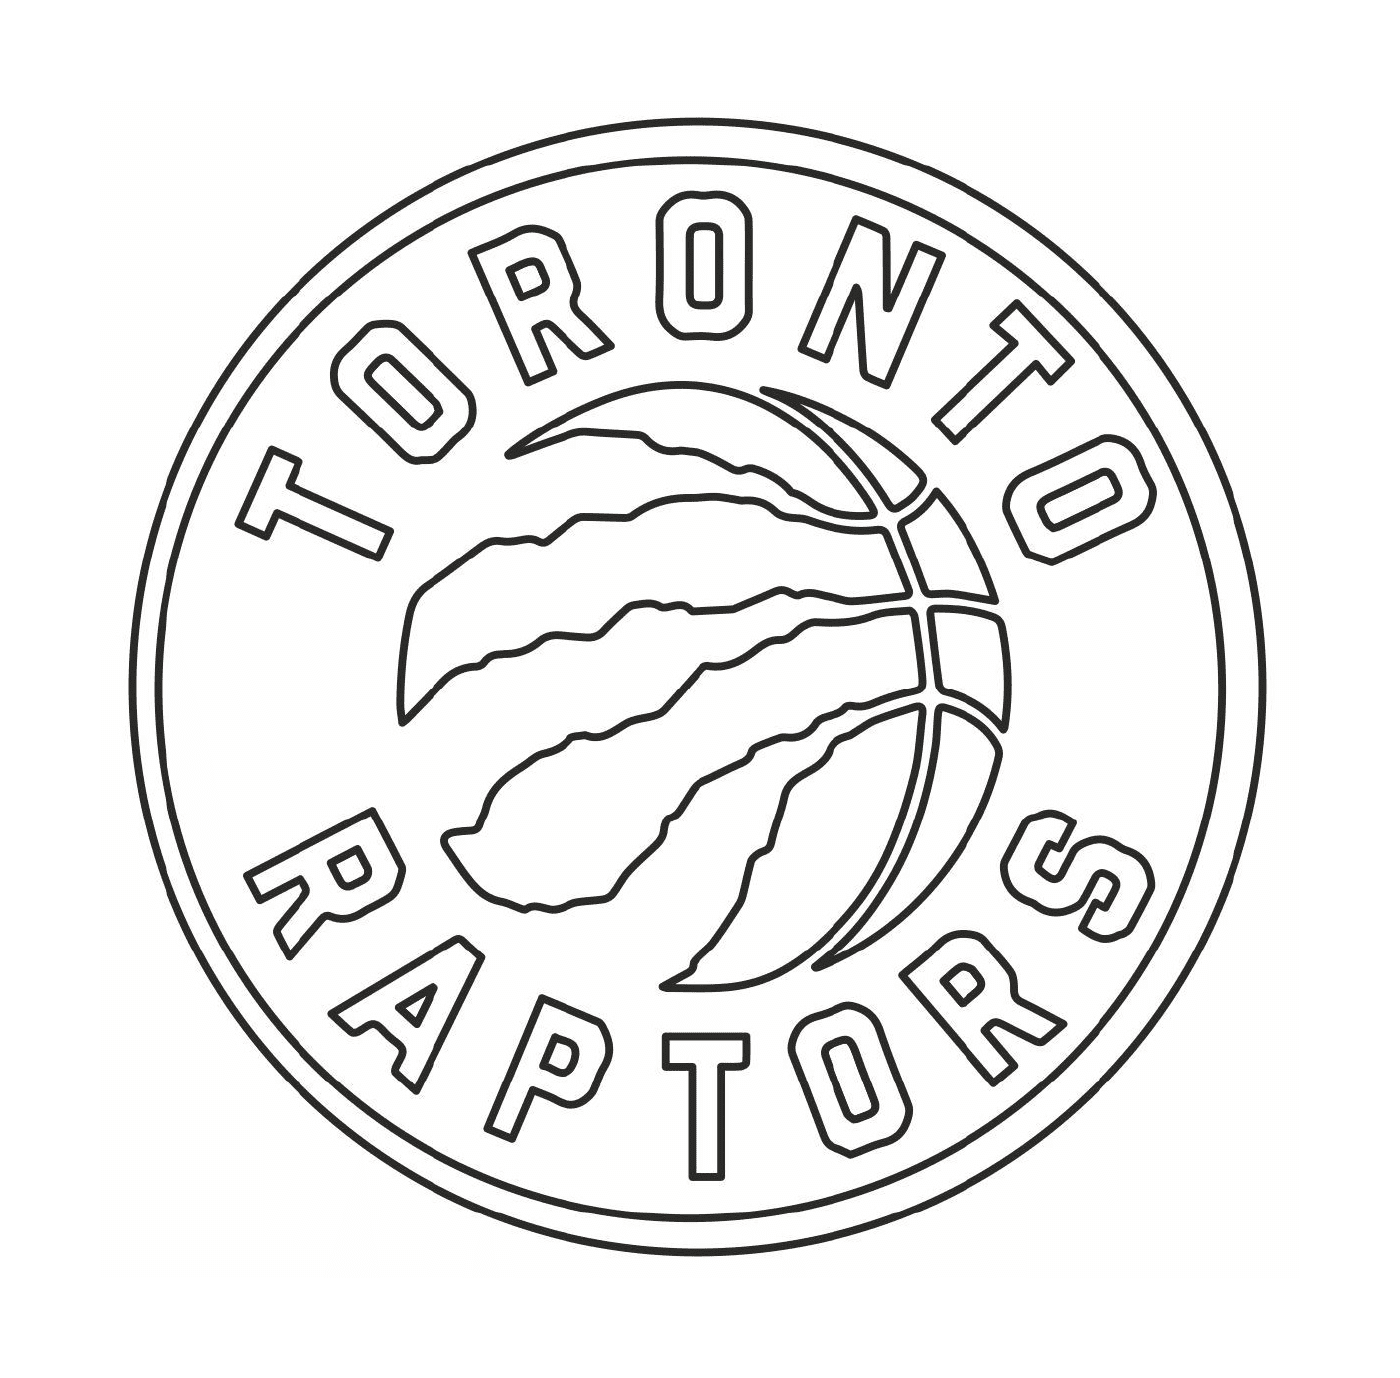   Le logo des Toronto Raptors, équipe de basketball 